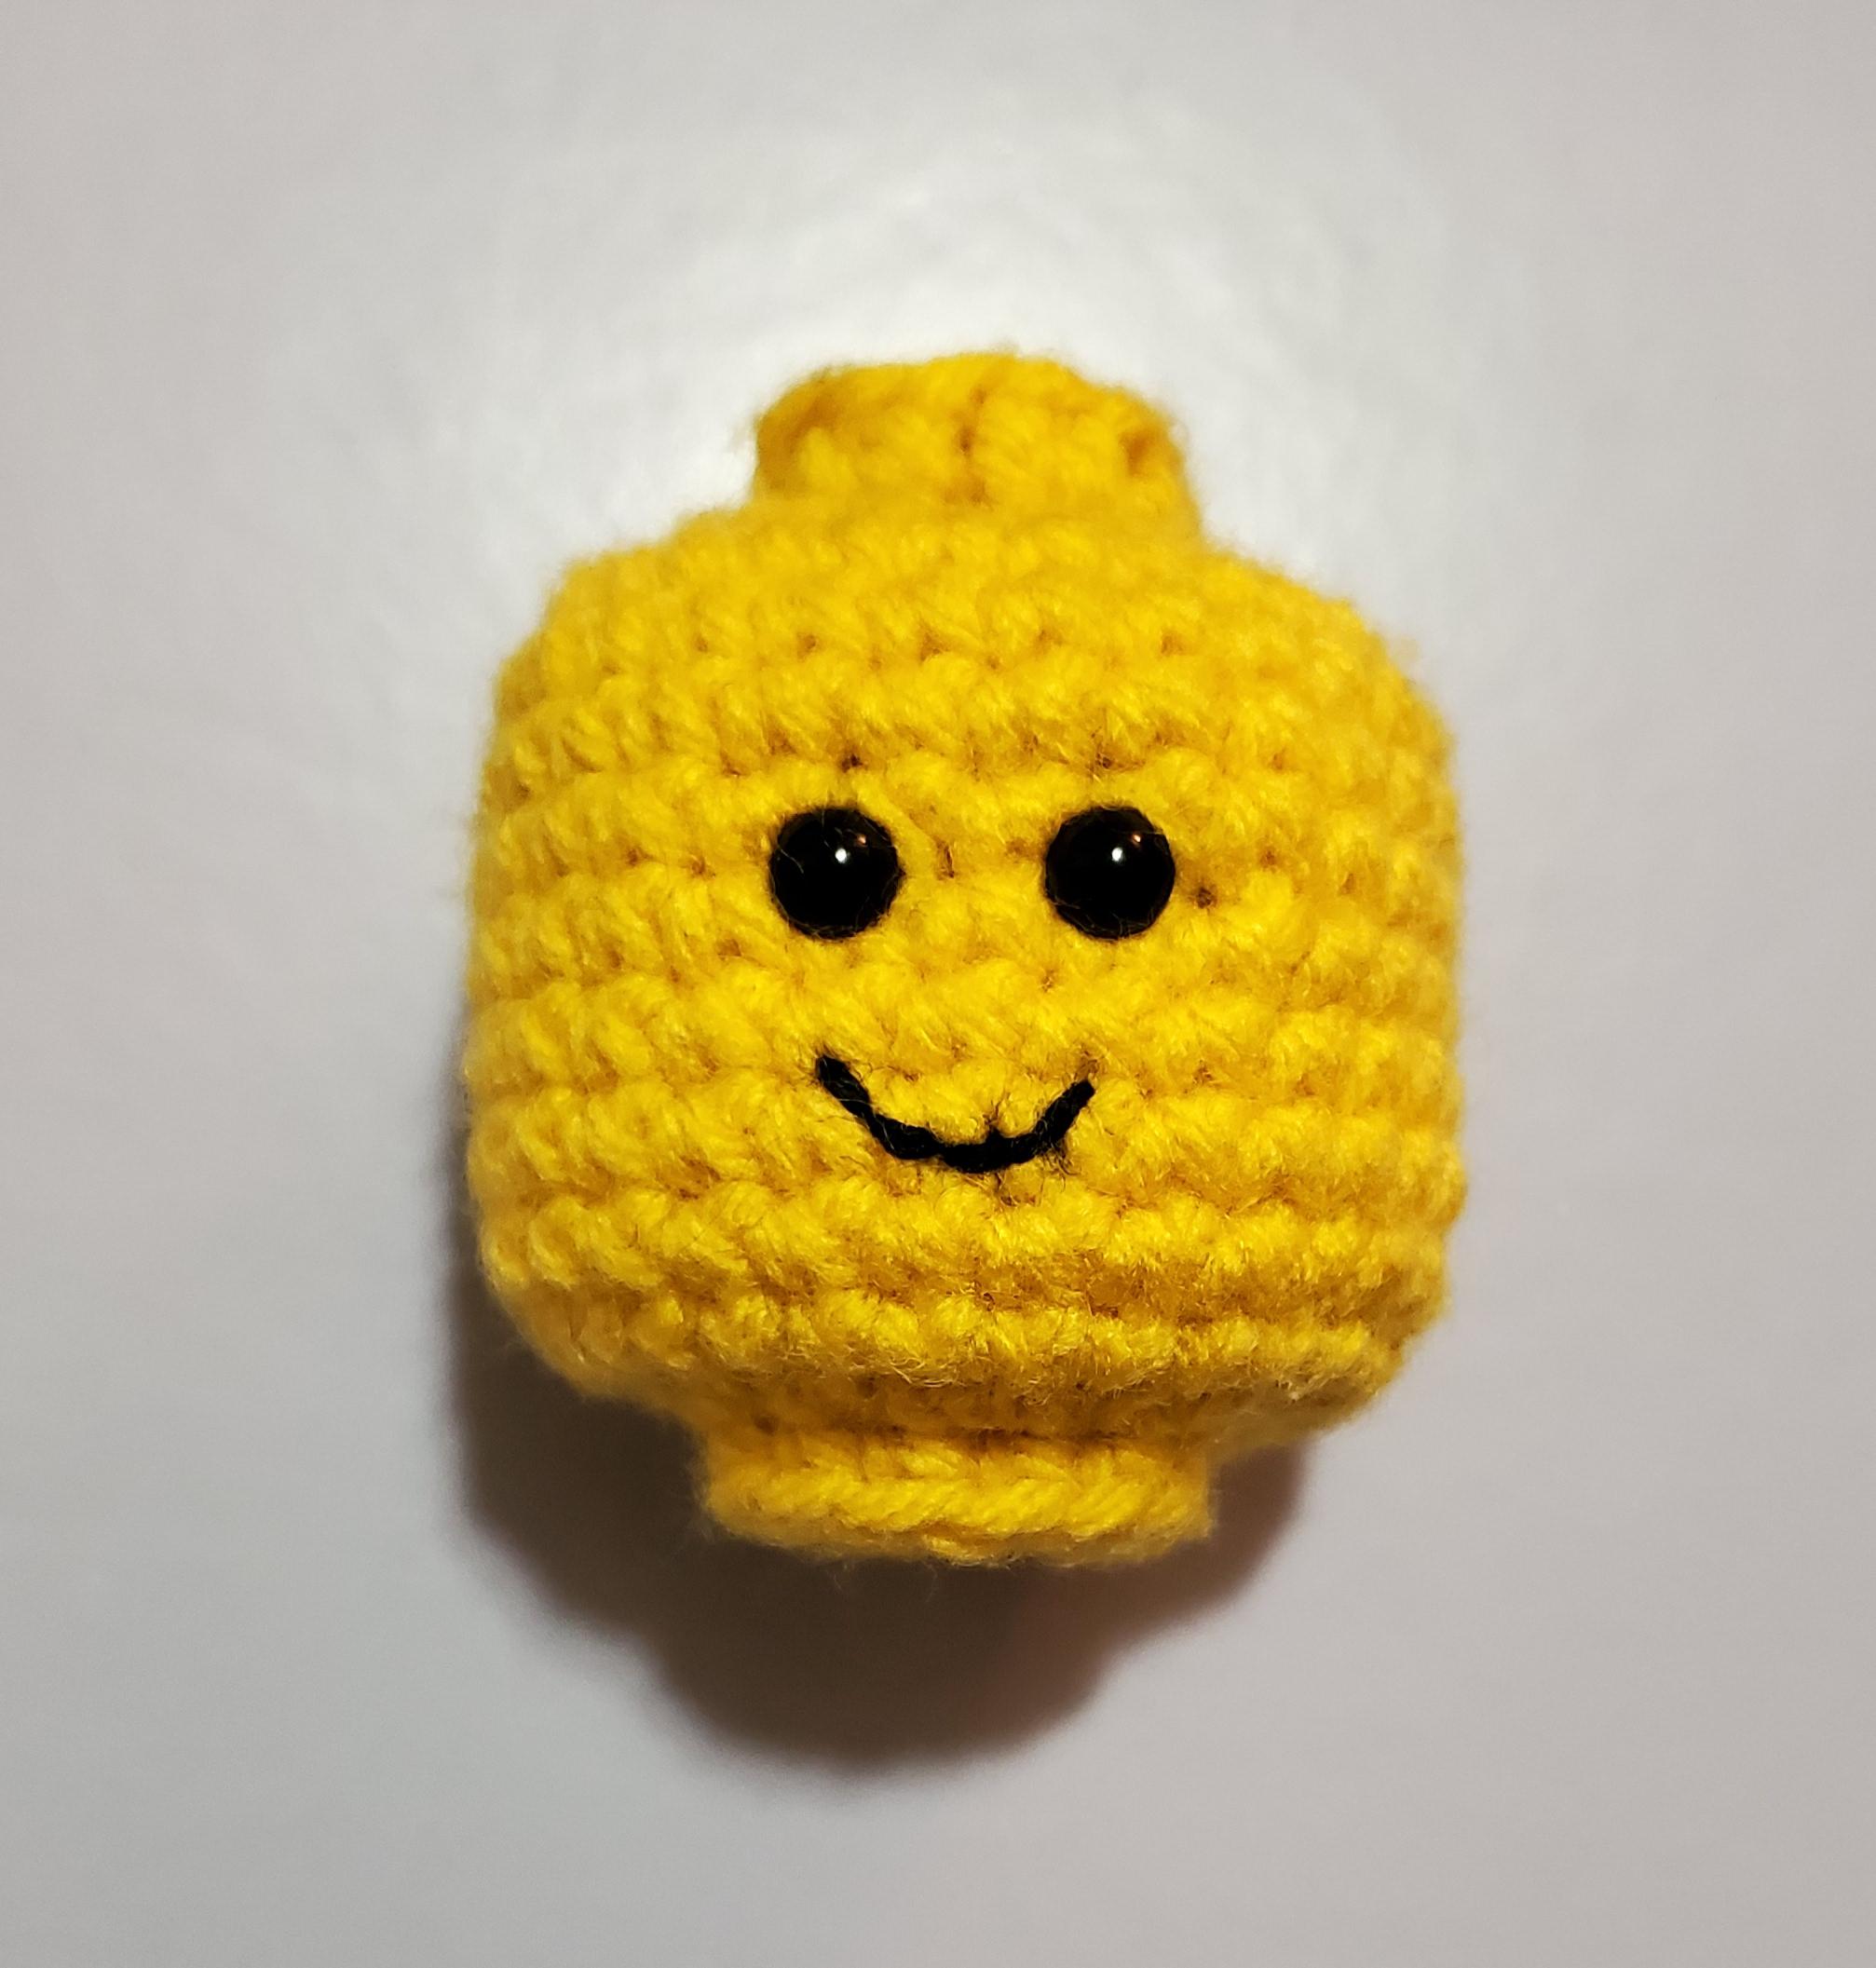 Finished Lego Head